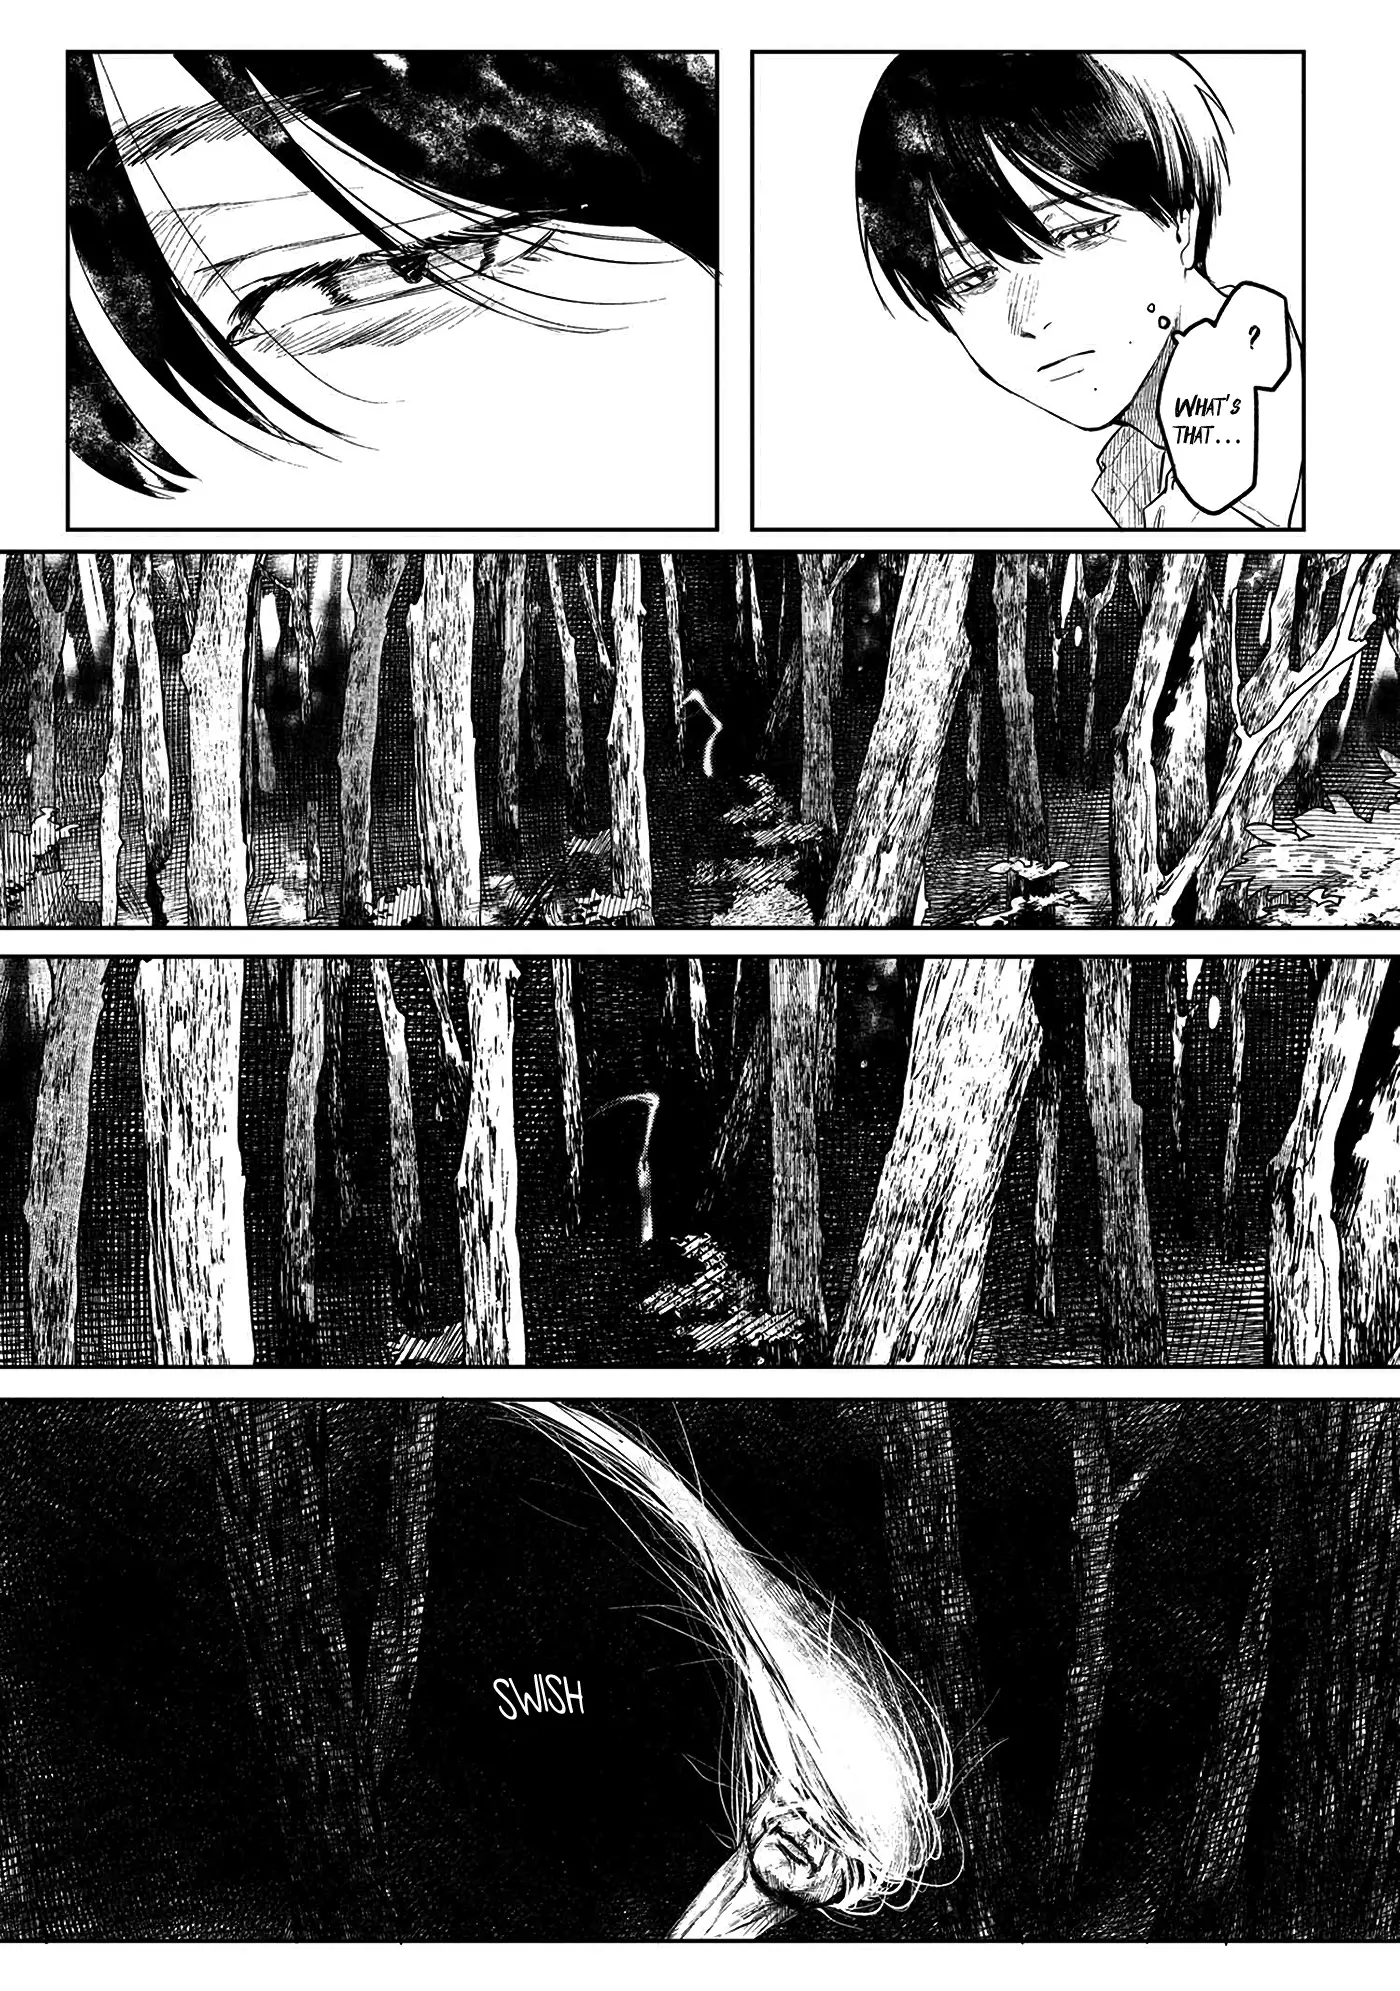 Hikaru Ga Shinda Natsu - 3 page 20-9980bcb3